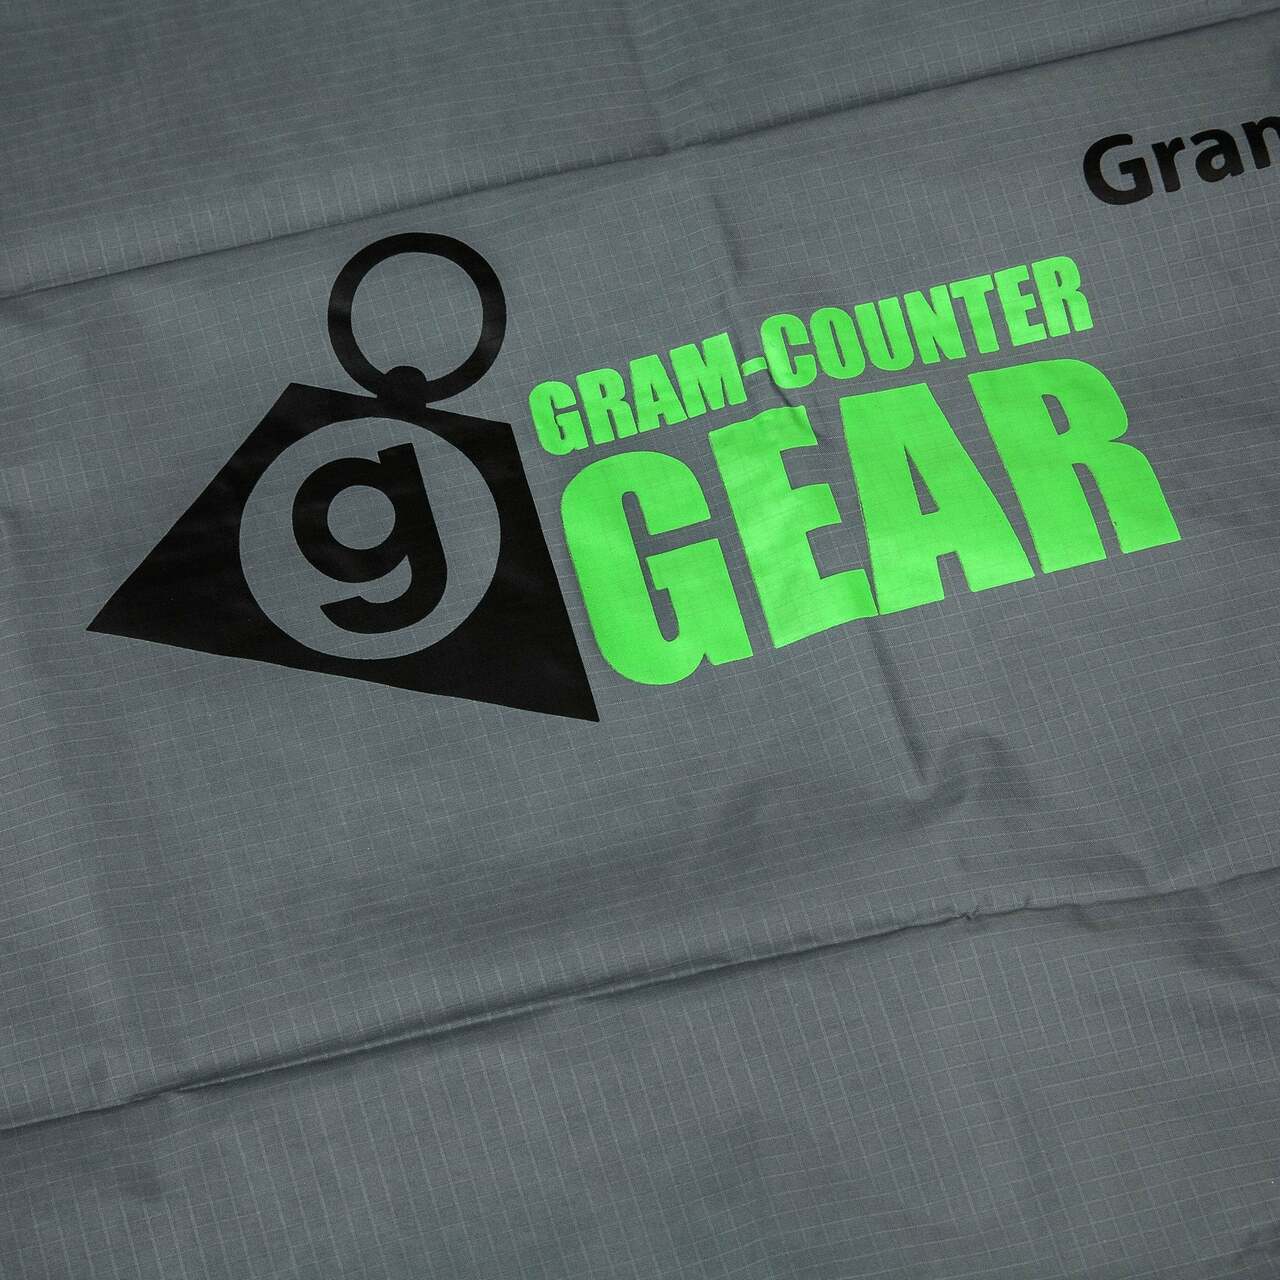 Gram-Counter Gear Ultra Groundsheet medium - 90 x 210 cm